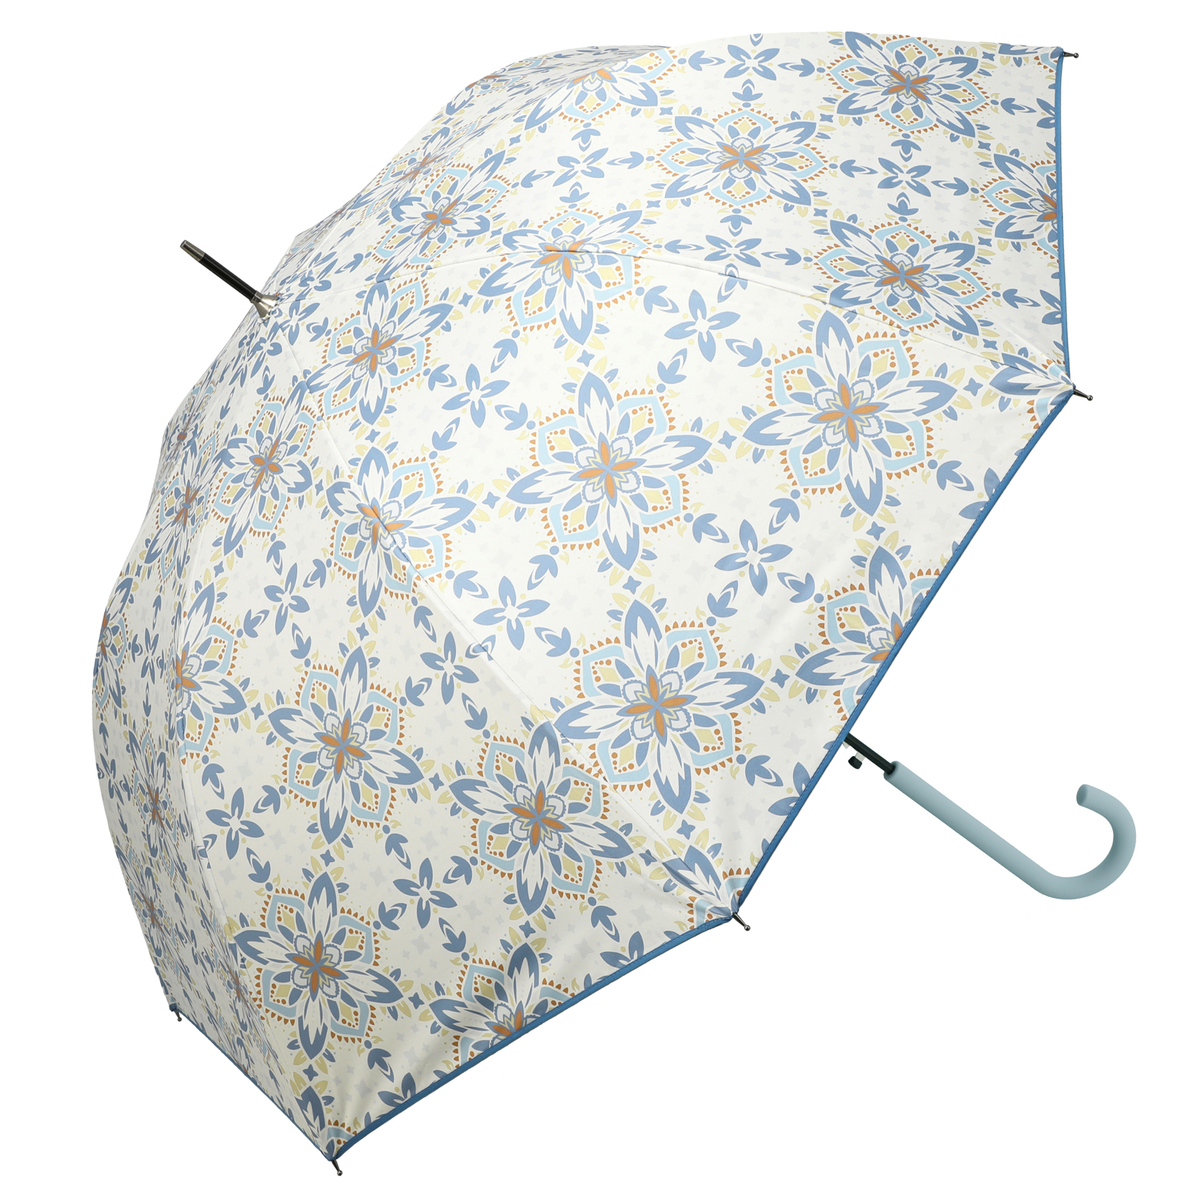  ルナジュメール UV+1級遮光+晴雨兼用 タイル柄長傘  ブルー